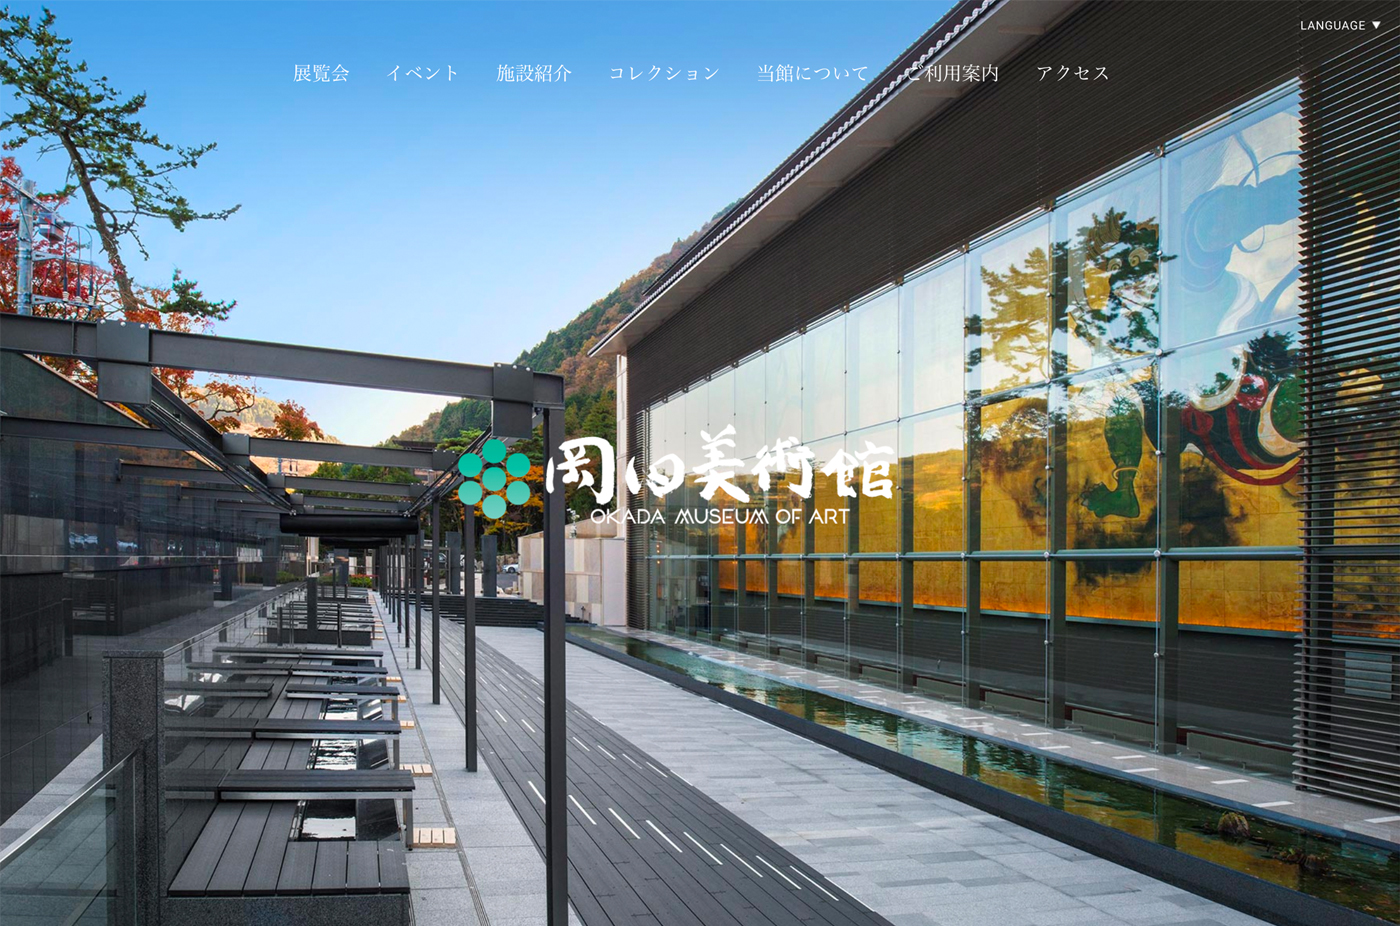 岡田美術館 OKADA MUSEUM OF ARTウェブサイトの画面キャプチャ画像